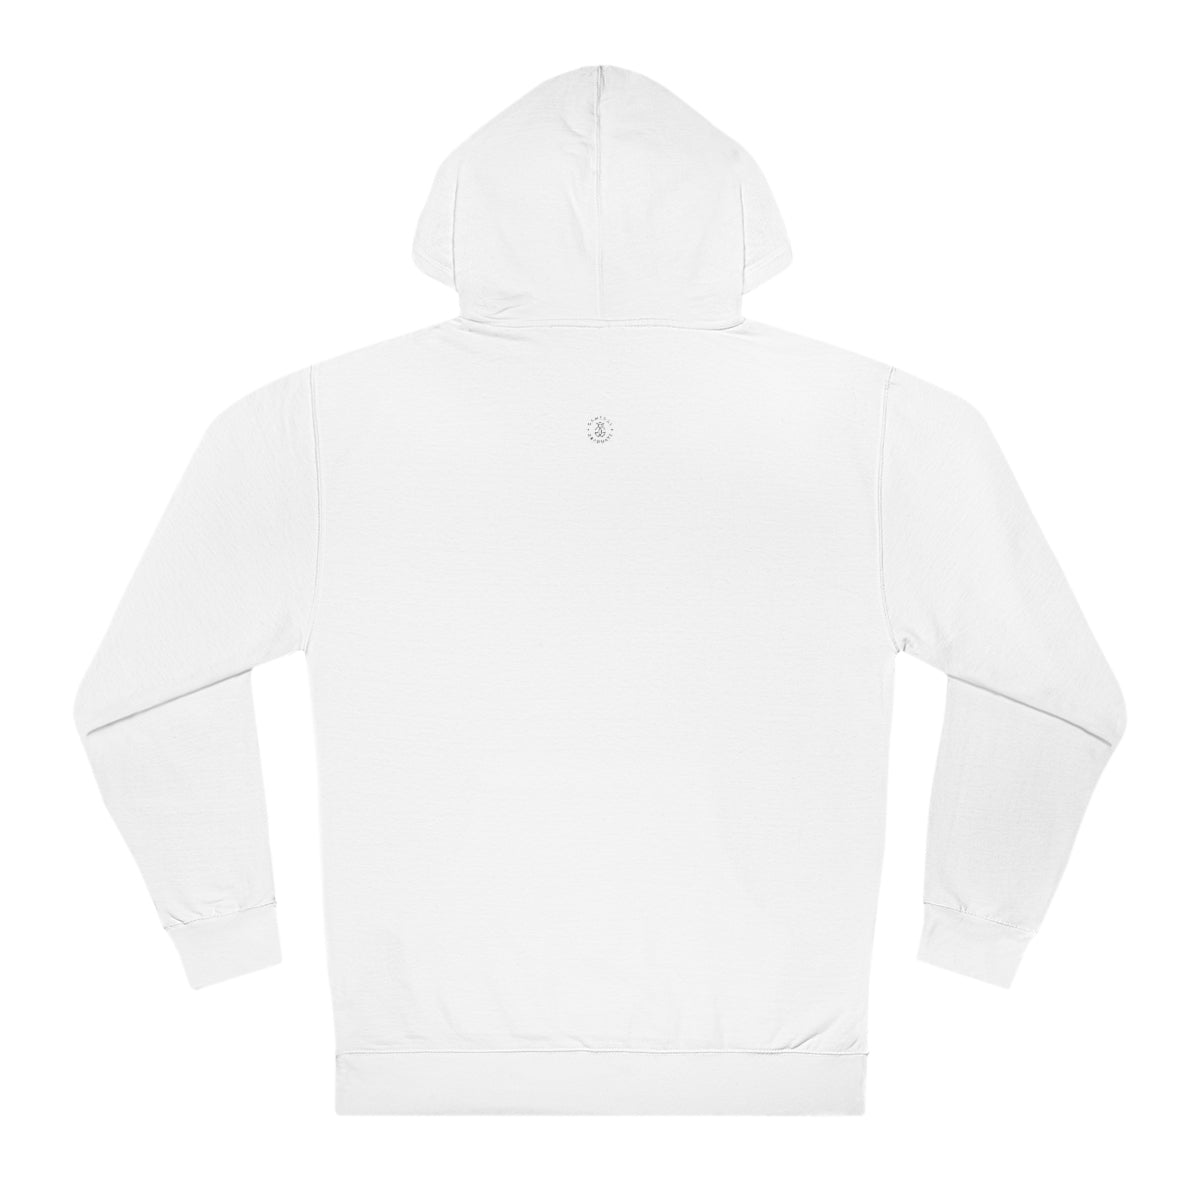 TCU Hooded Sweatshirt - GG - ITC